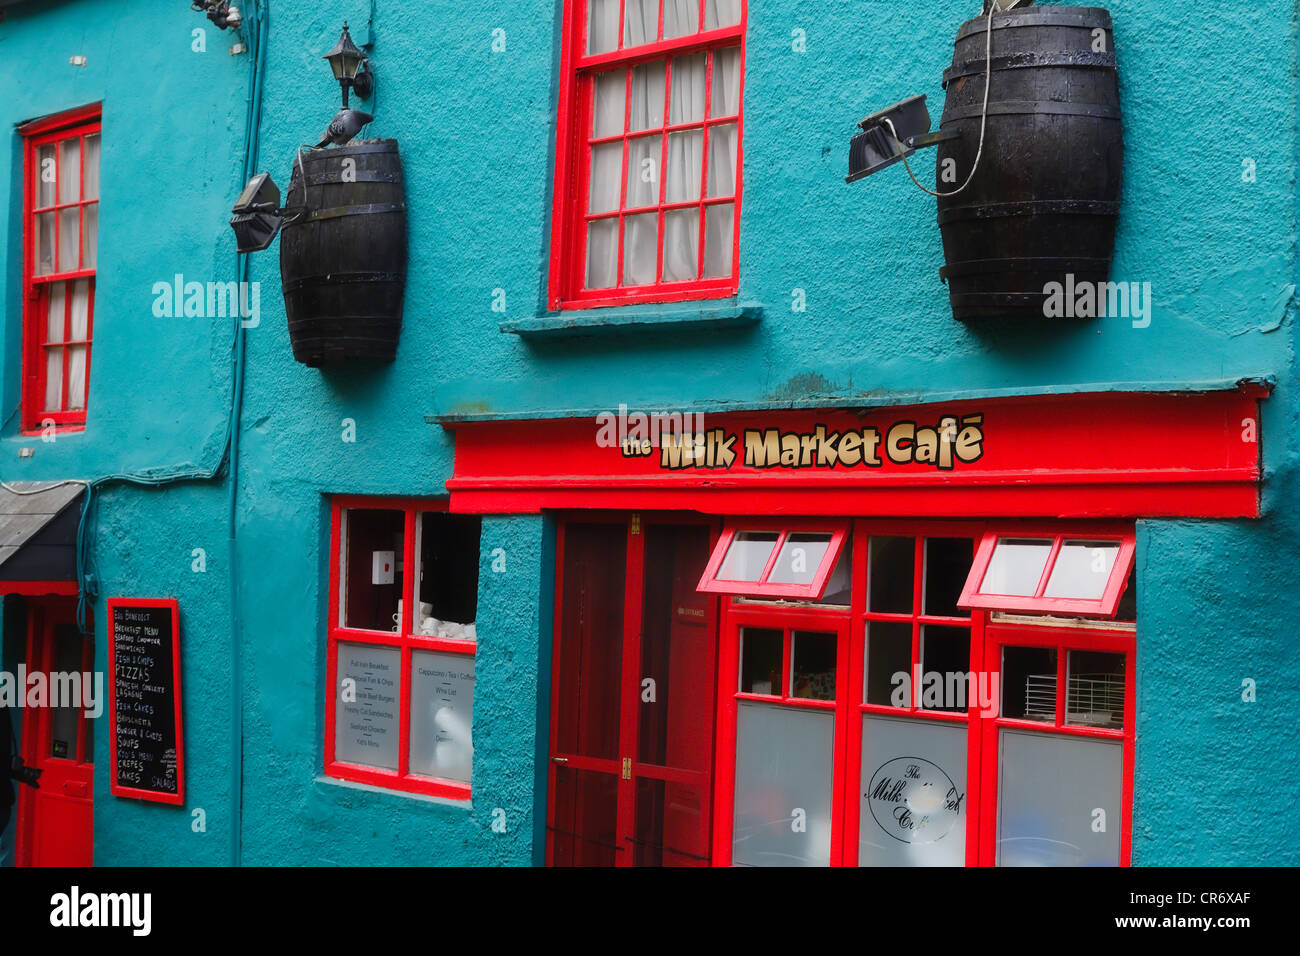 Facade of the Milk Market Cafe, Kinsale, County Cork, Republic of Ireland Stock Photo